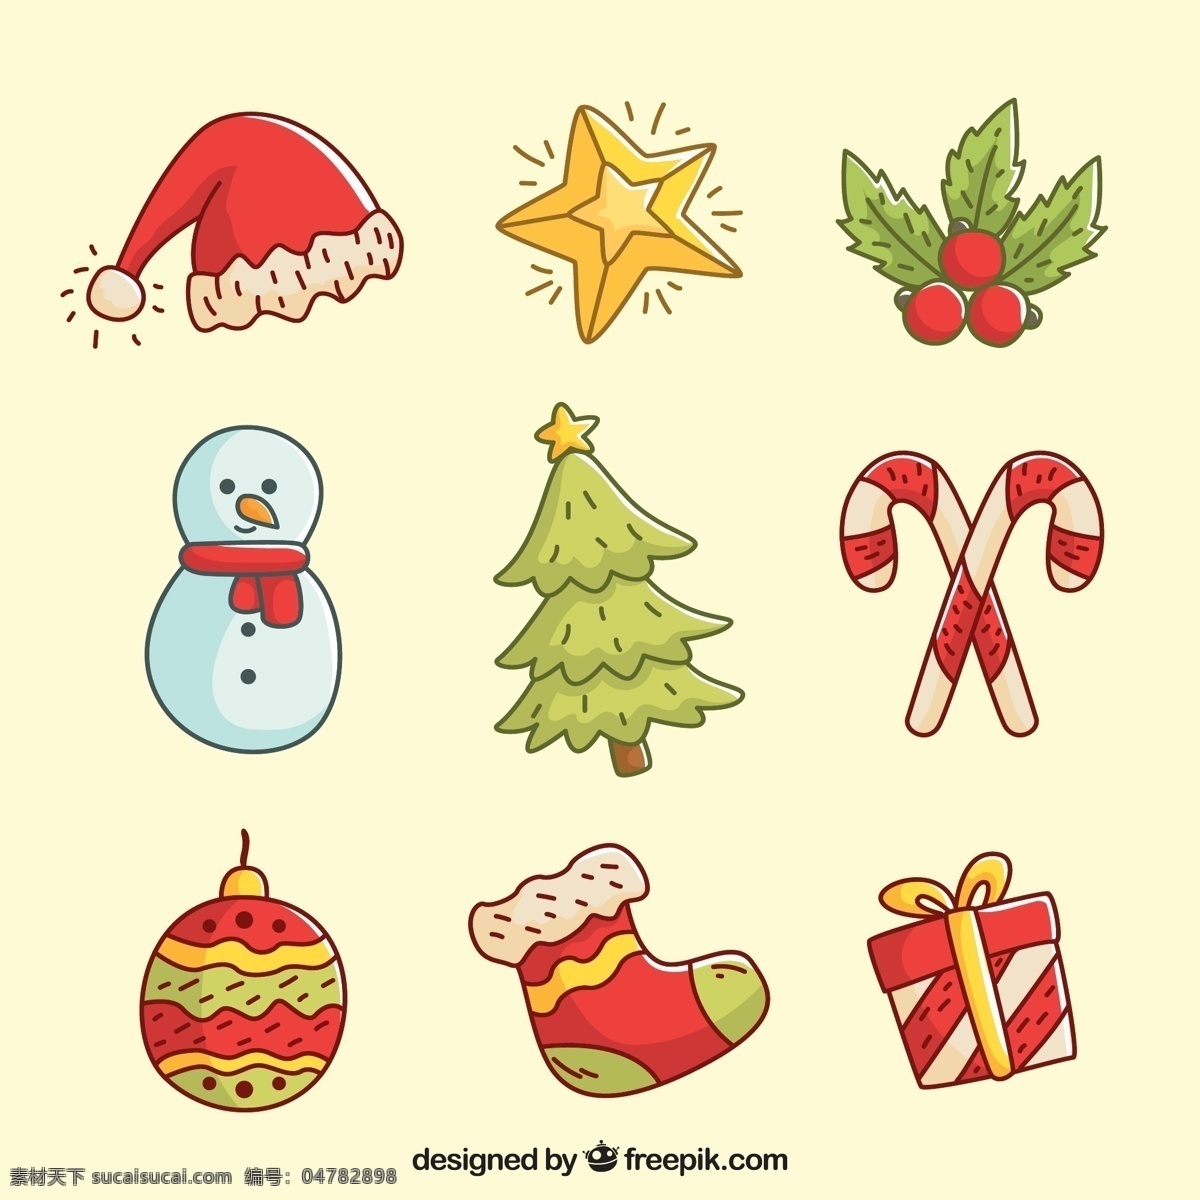 彩绘 圣诞节 装饰品 元素 矢量图 圣诞树 雪人 礼物 树叶 袜子 圣诞帽